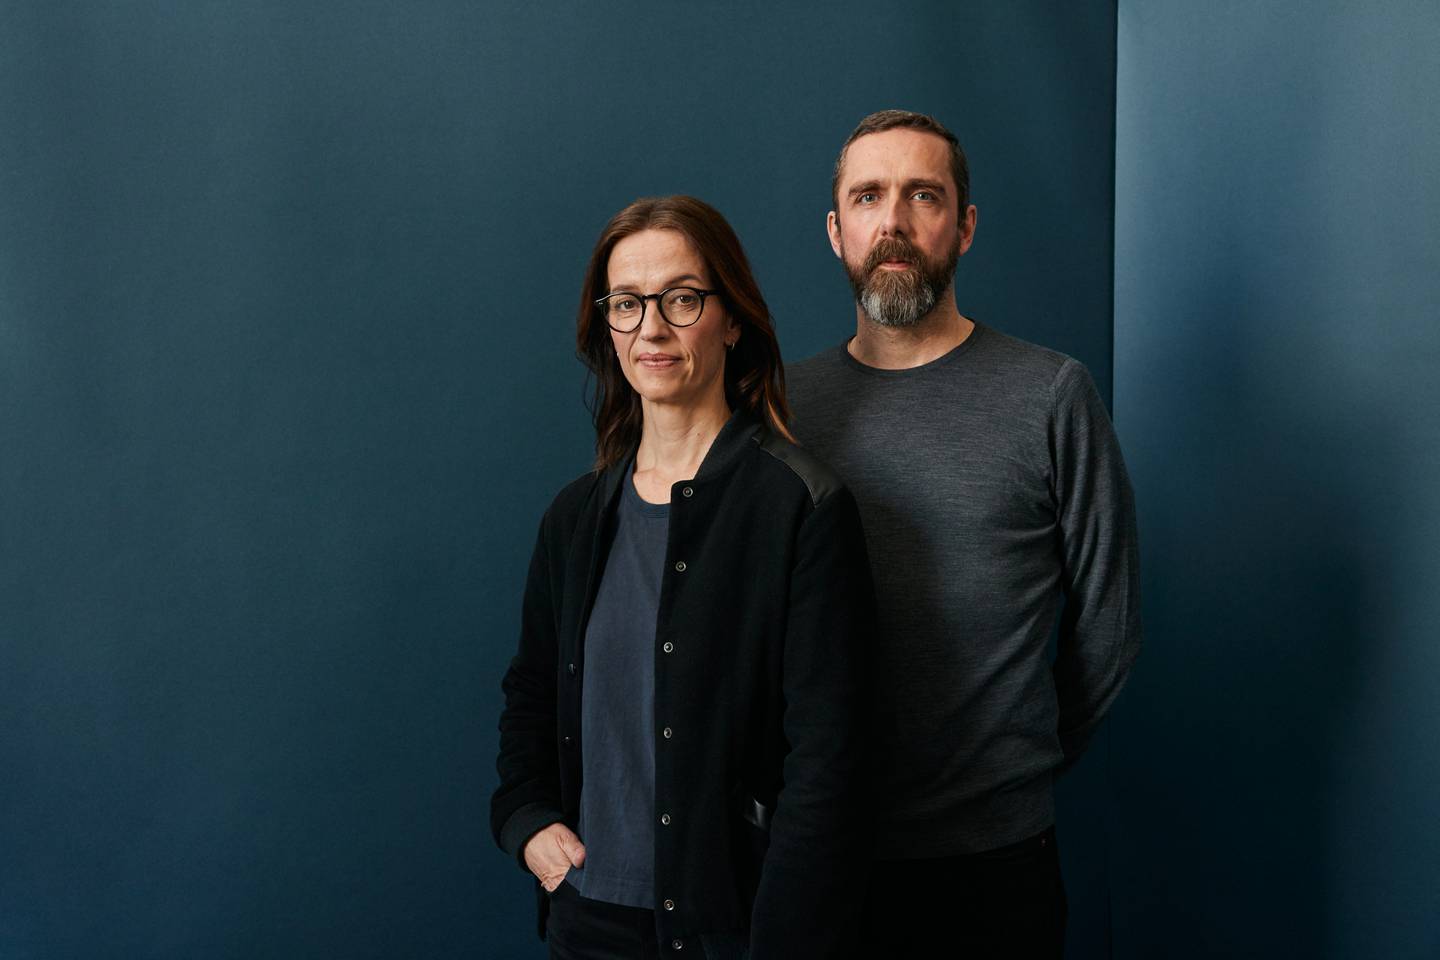 Serieskaperne Anne Bjørnstad og Eilif Skodvin har hatt stor suksess med seriene de har laget for Netflix og HBO tidligere. Nå skal de lage mer norsk humordrama for Netflix.